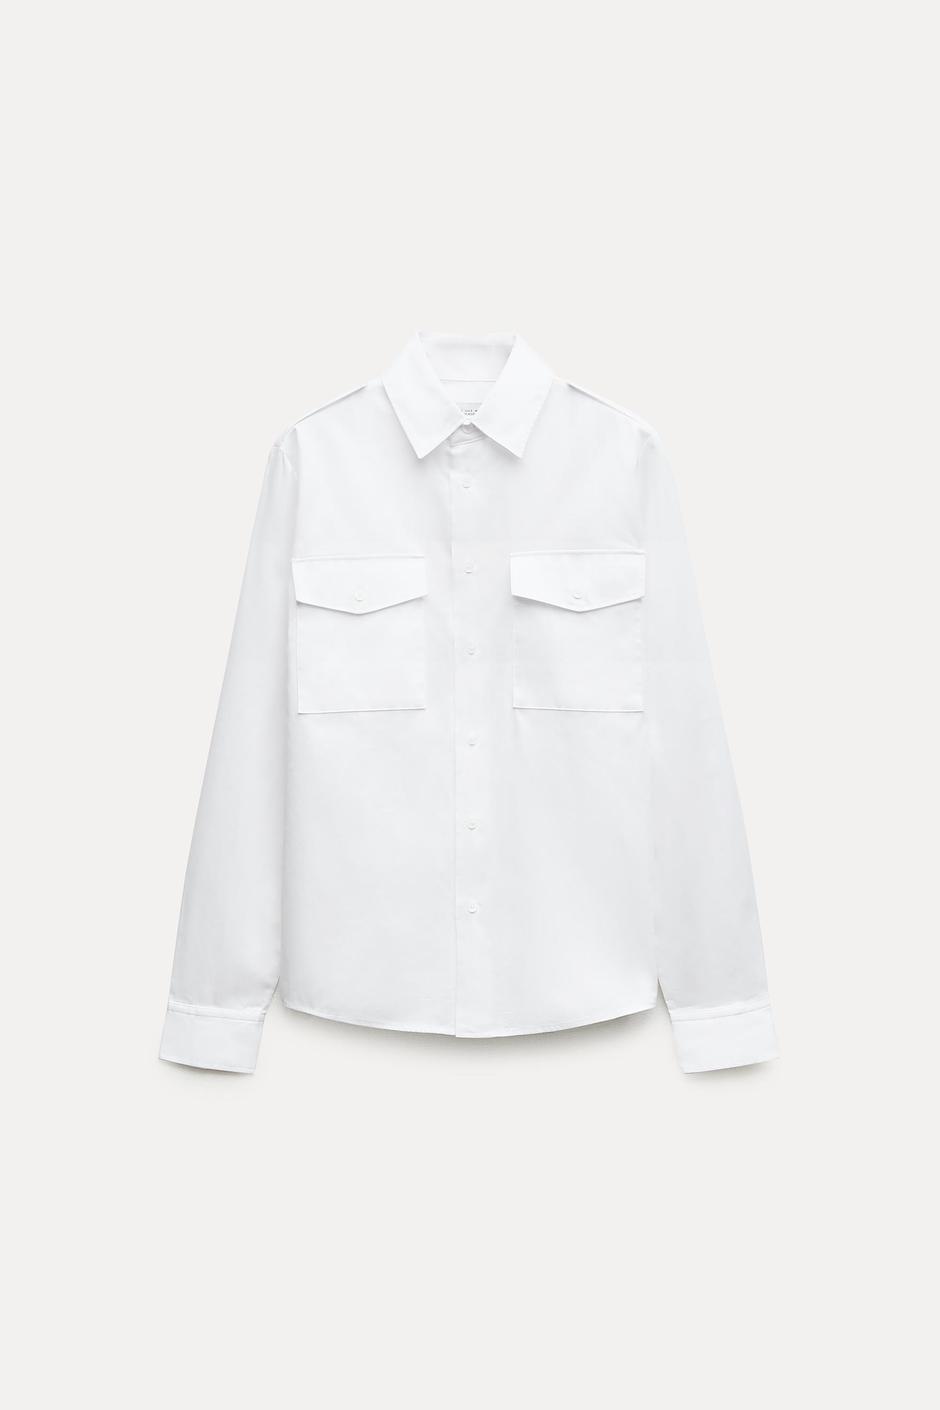 Foto: Zara, bijela košulja (prije 29,95 eura - sada 17,99 eura) | Autor: Zara